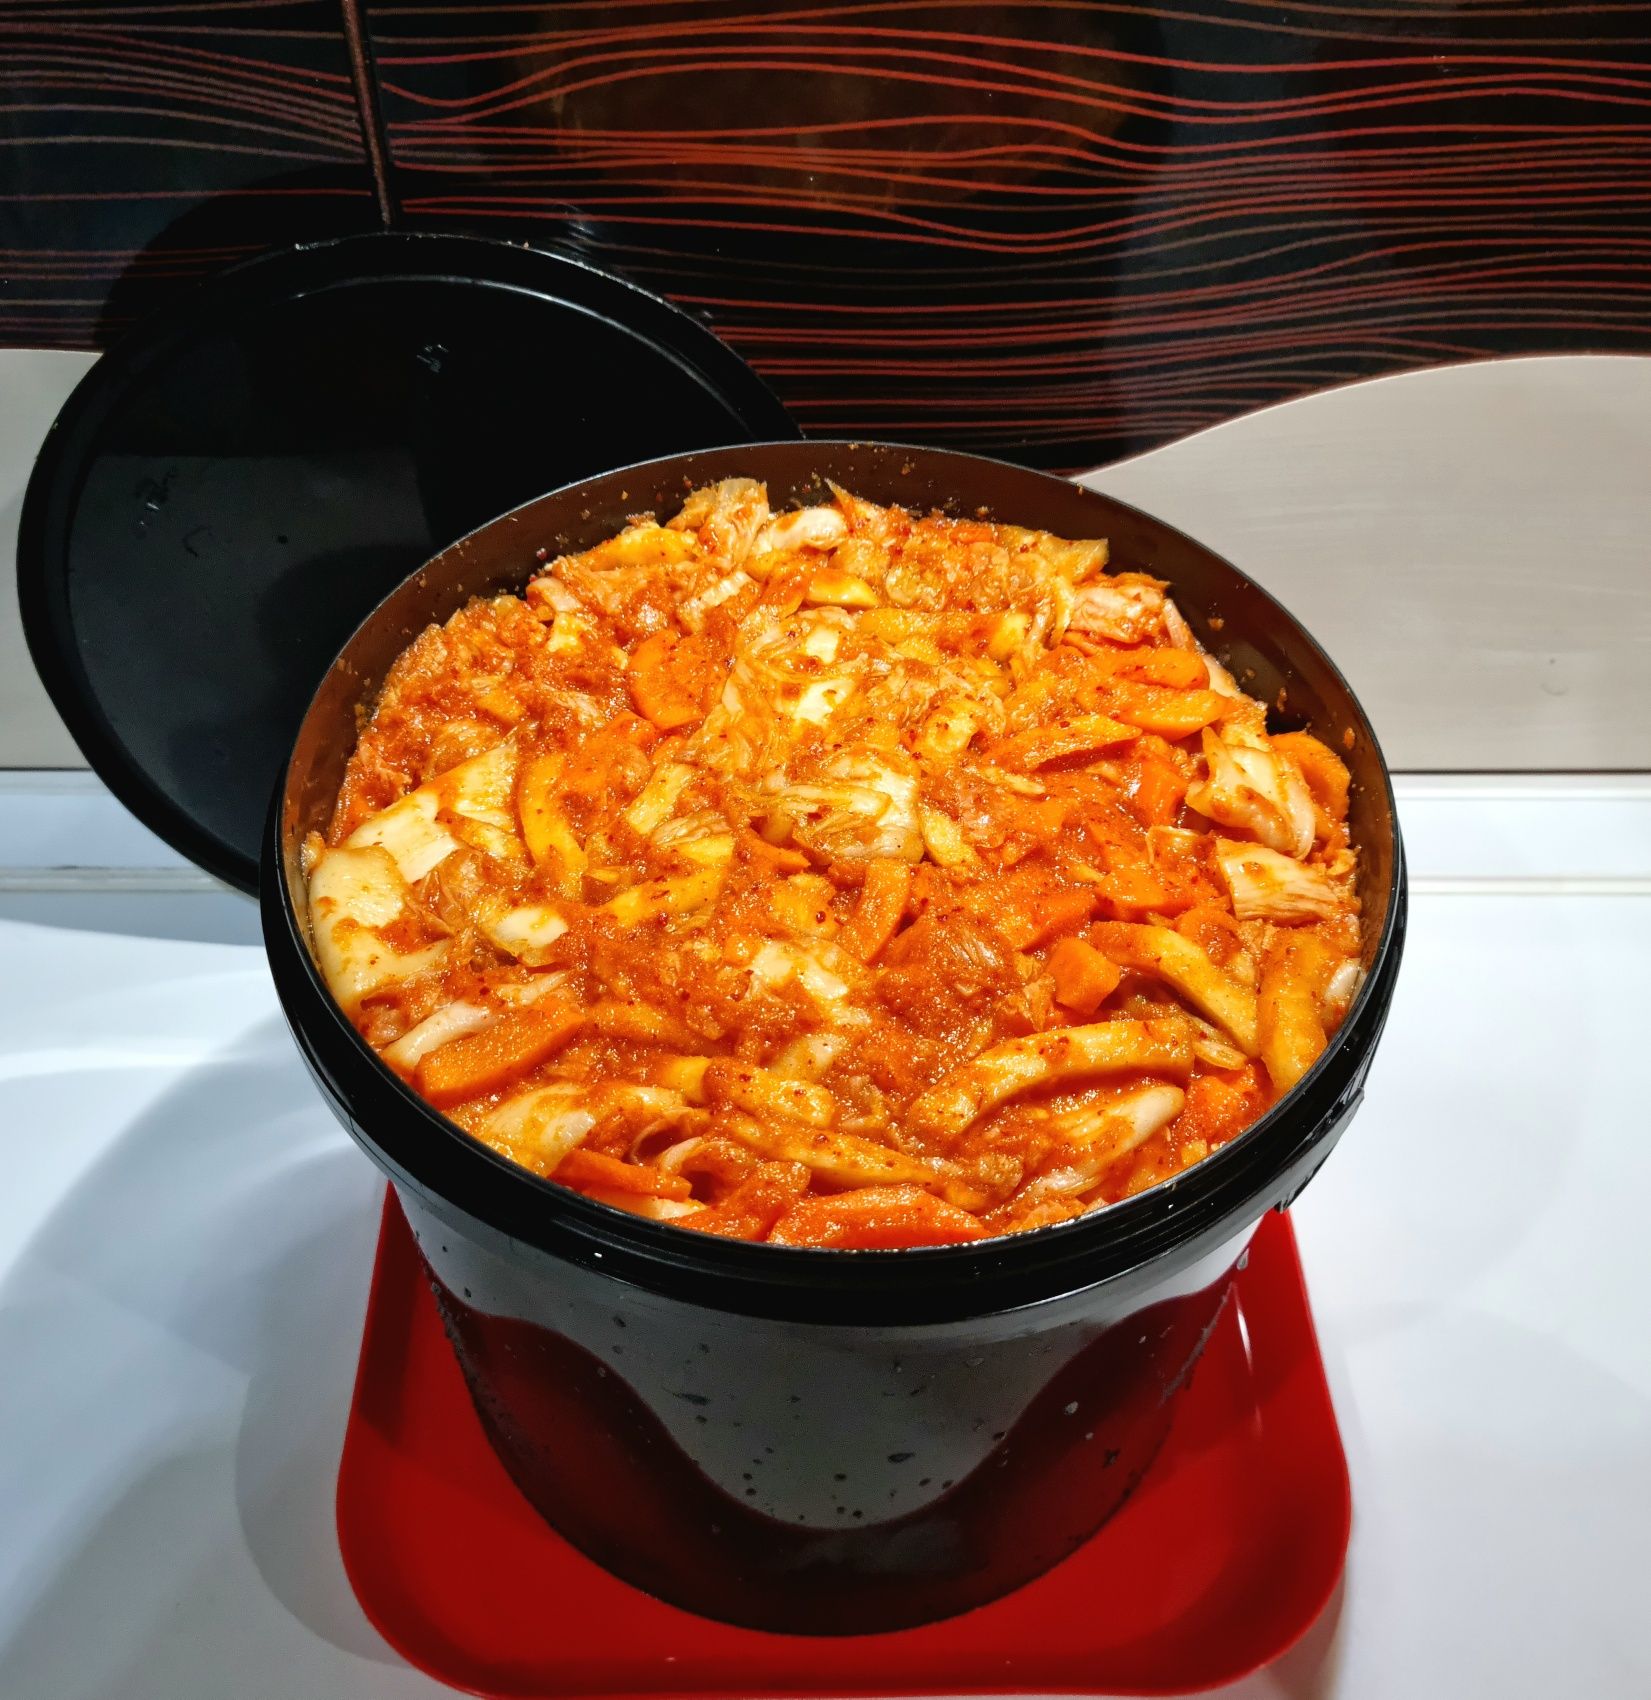 Kimchi tradycyjne 5l Koreański przysmak superfood Carolina Reaper